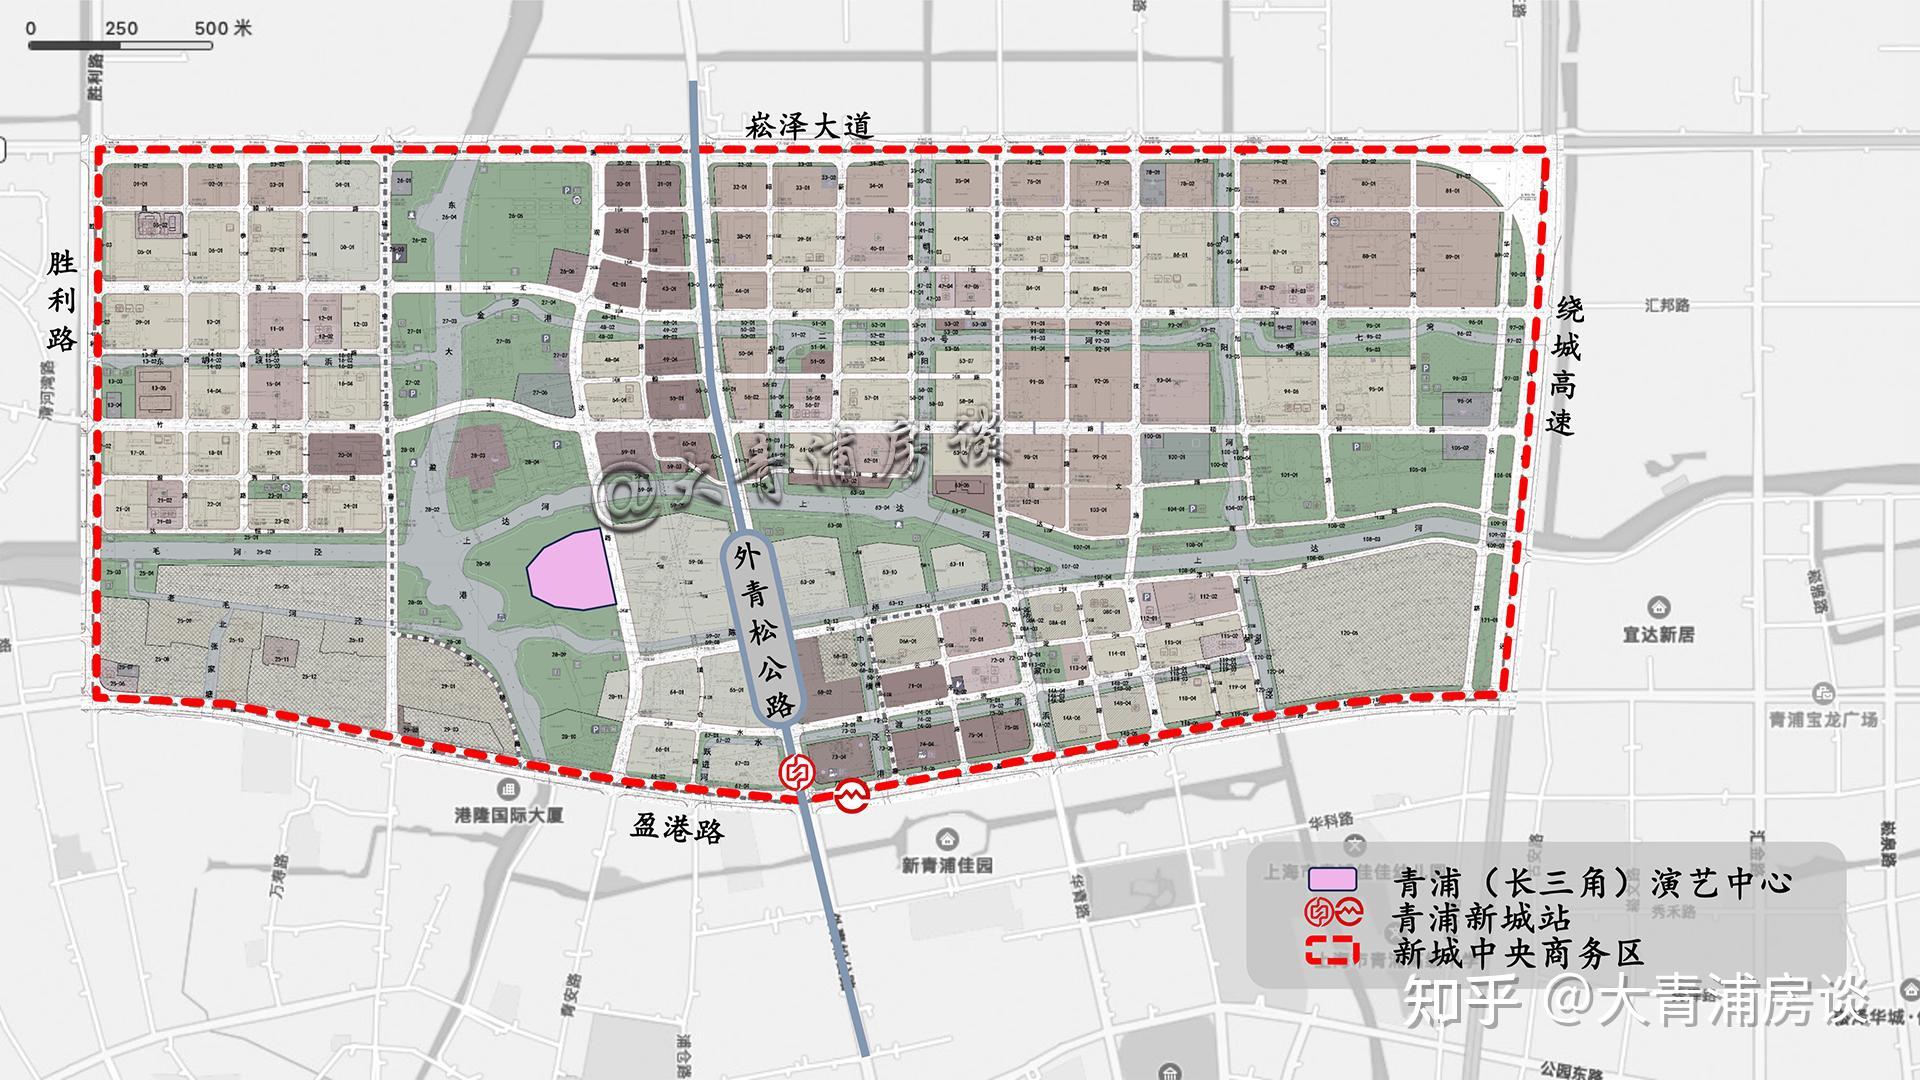 重磅青浦新城绿色生态规划建设导则发布亮点很多